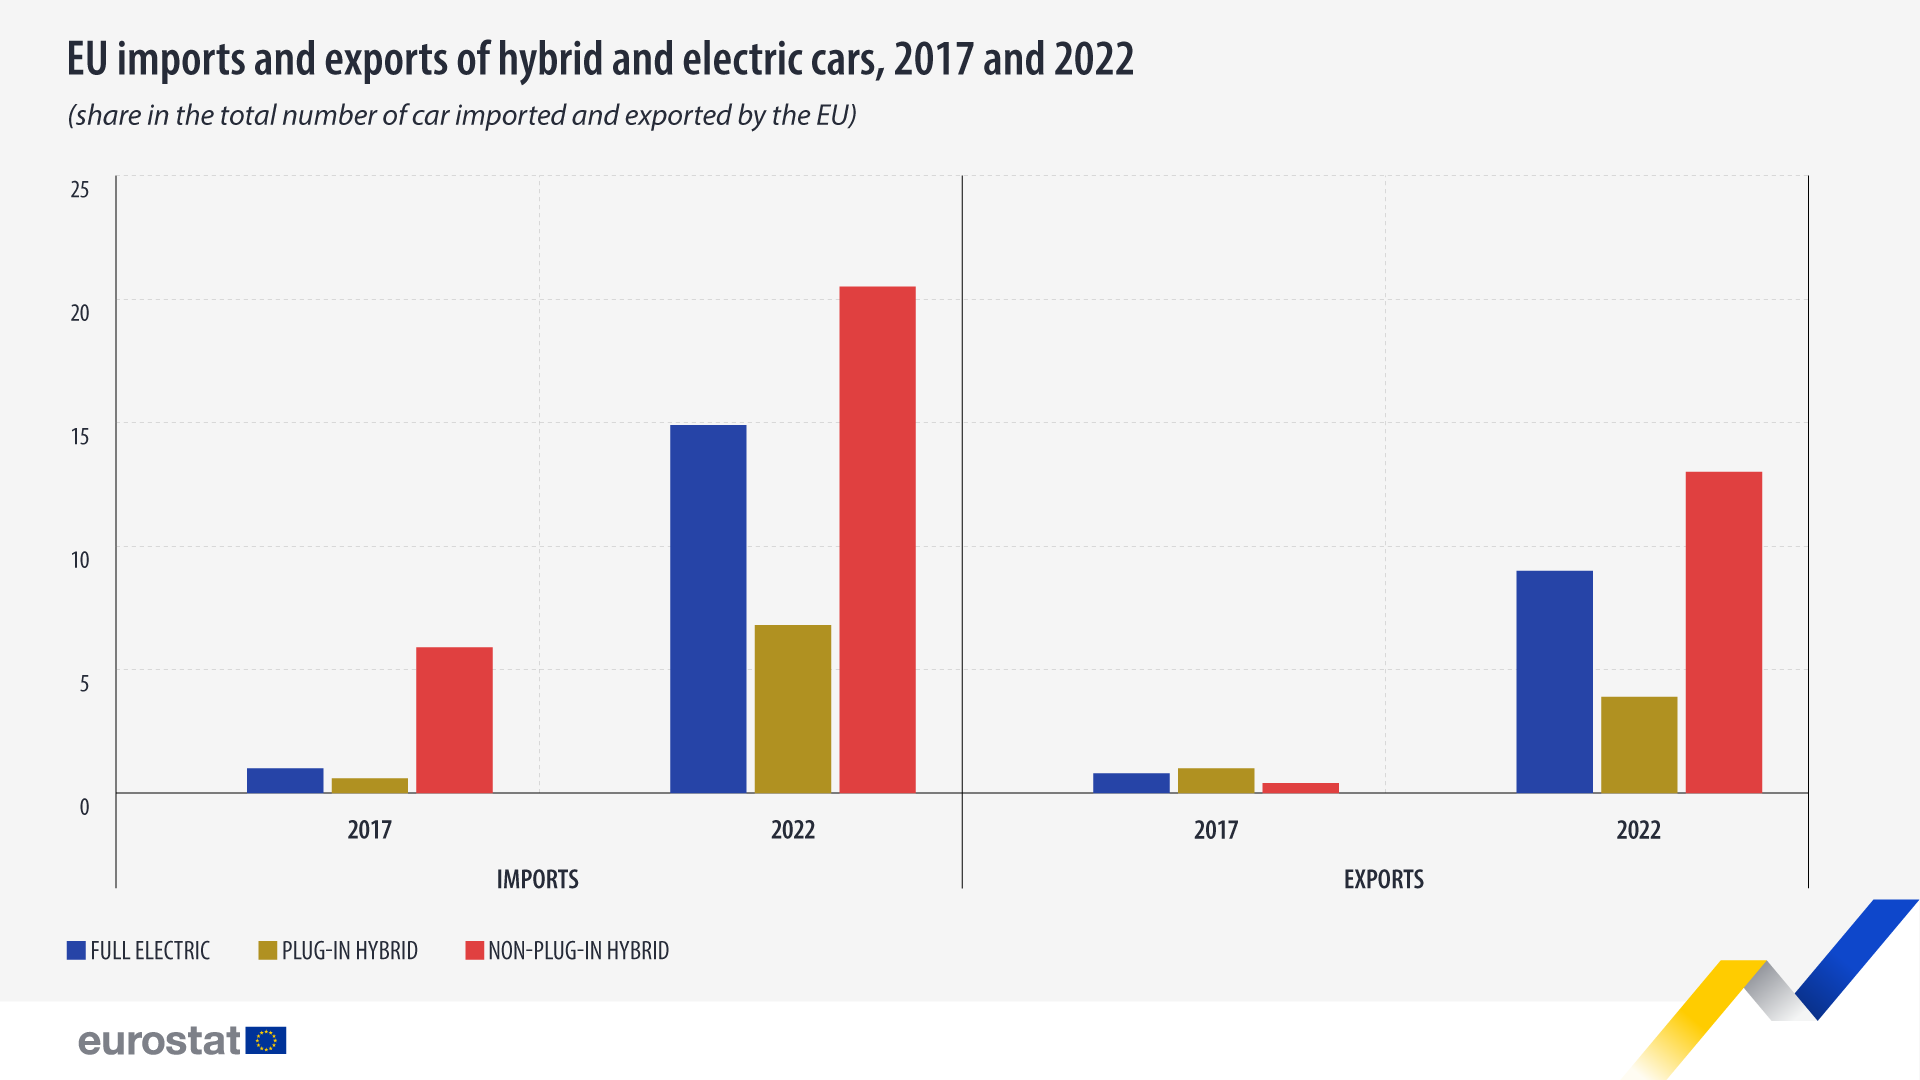 Стоковен графикон: Увозот и извозот на хибридни и електрични автомобили од ЕУ, 2017 и 2022 година, учество во вкупниот број автомобили увезени и извезени од ЕУ